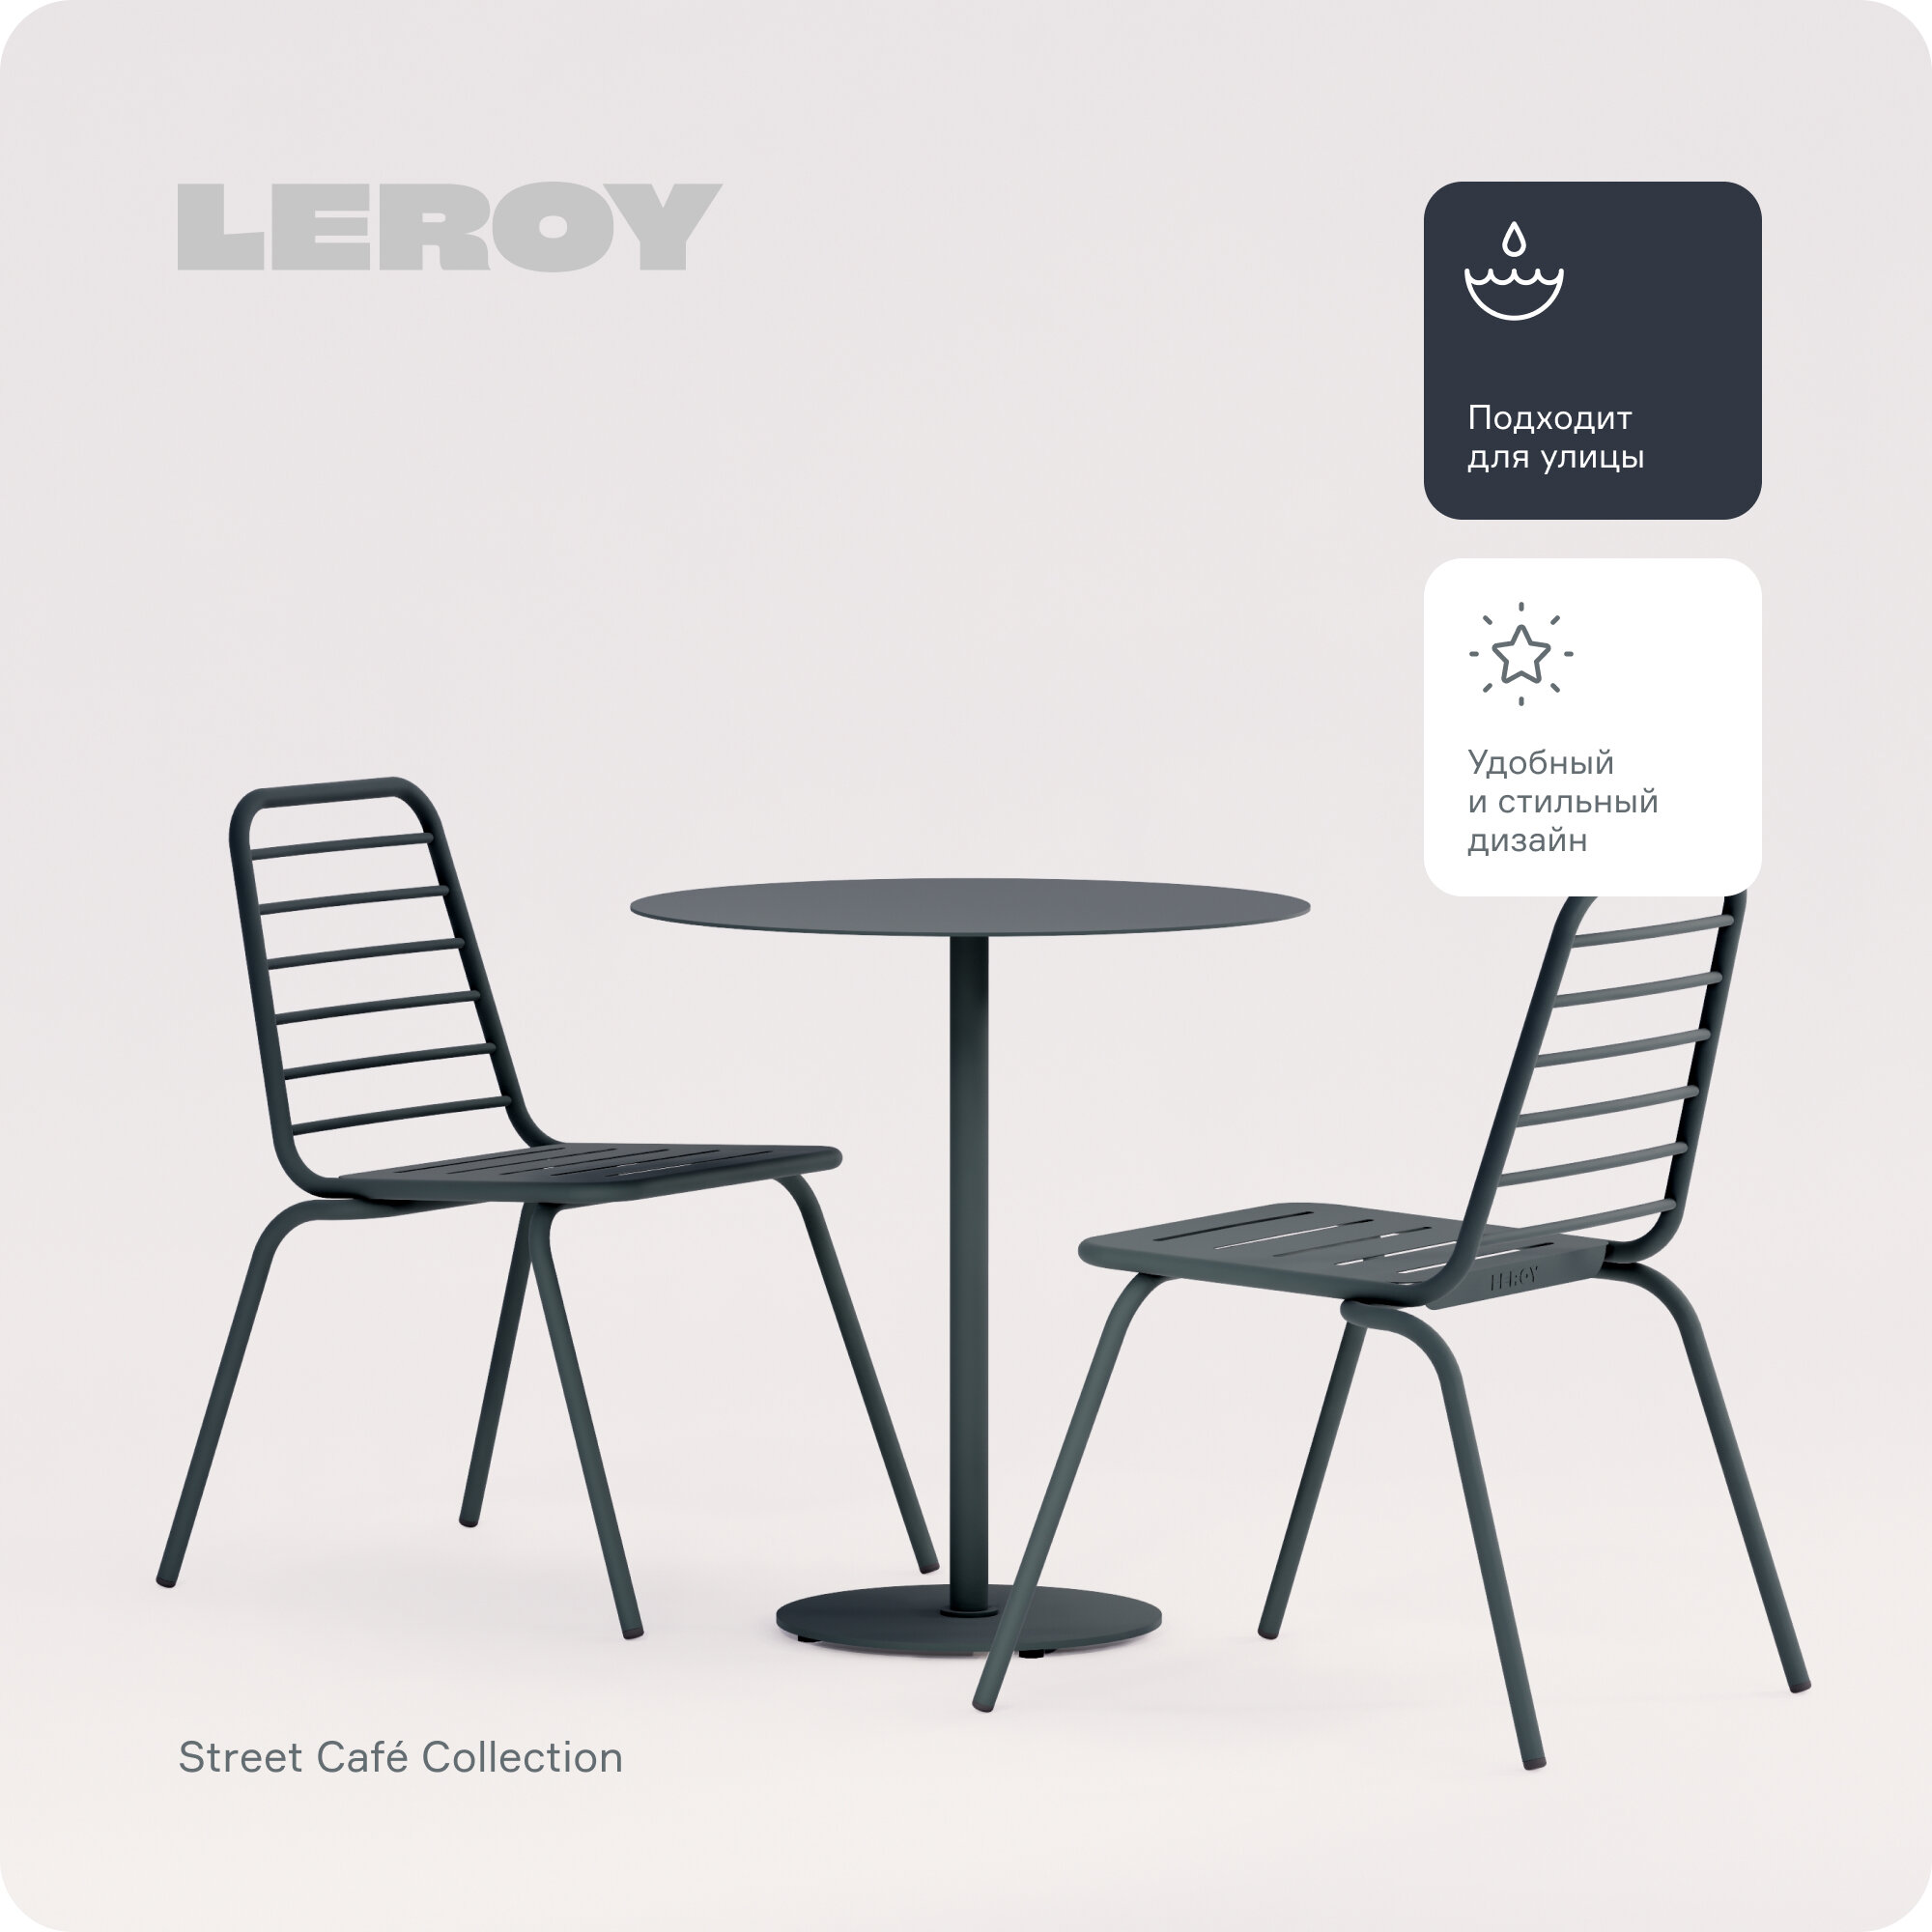 Набор обеденной мебели Street Café от бренда Leroy Design: один круглый стол и два стула, цвет: темно-зеленый